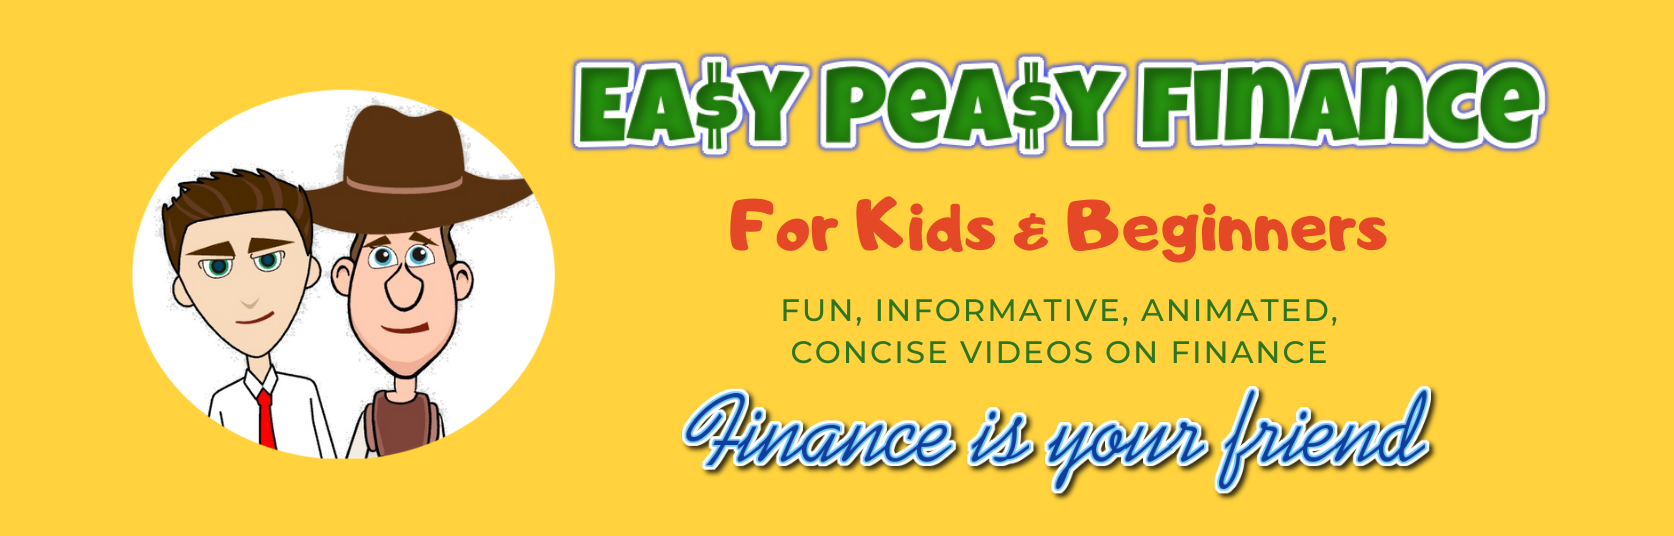 Easy Peasy Finance - Banner